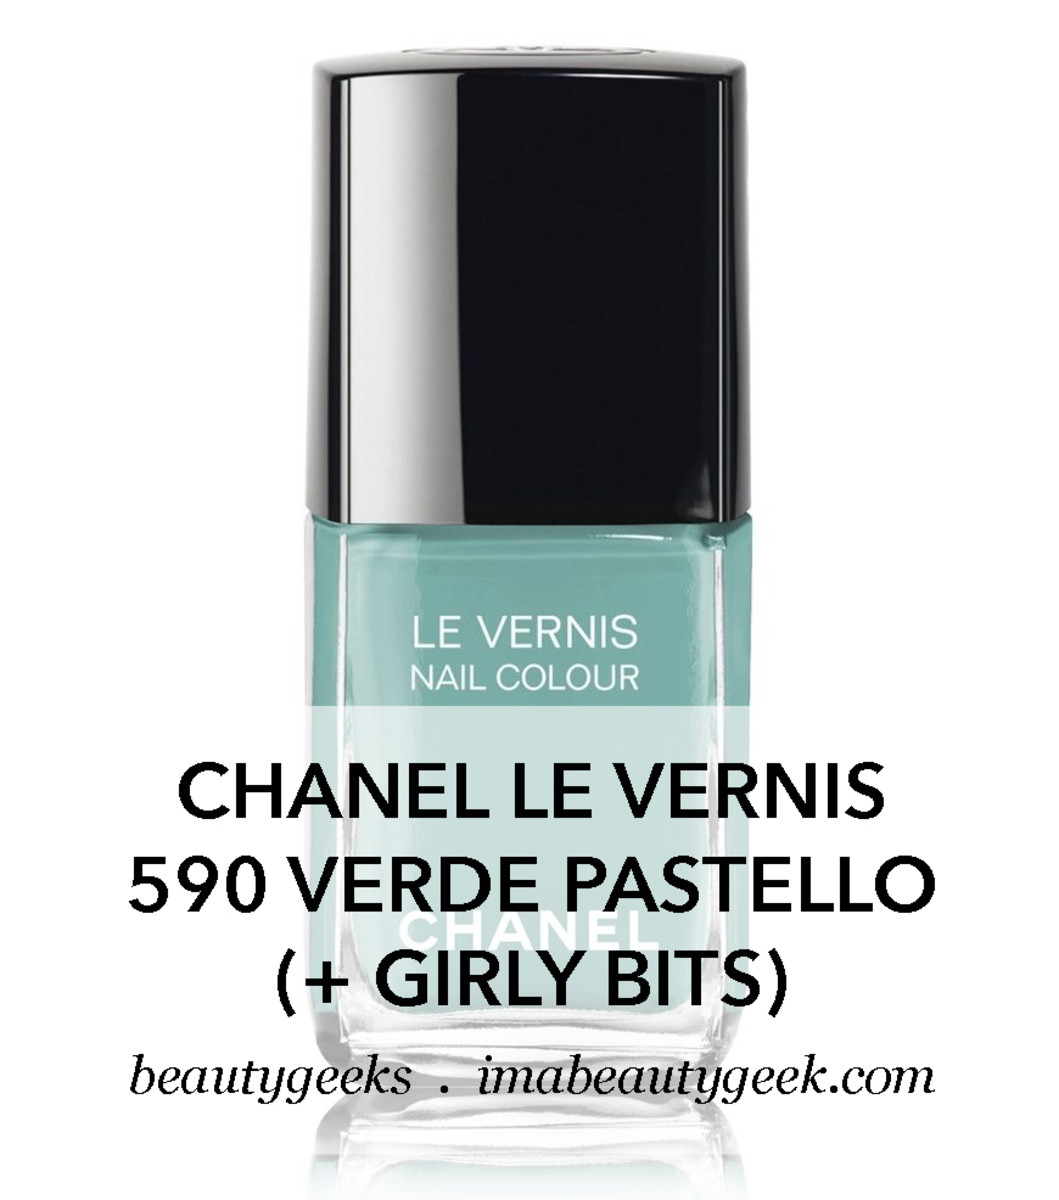 Chanel N 5 Parfum 1986 EAU DE PARFUM 35 Ml  Etsy